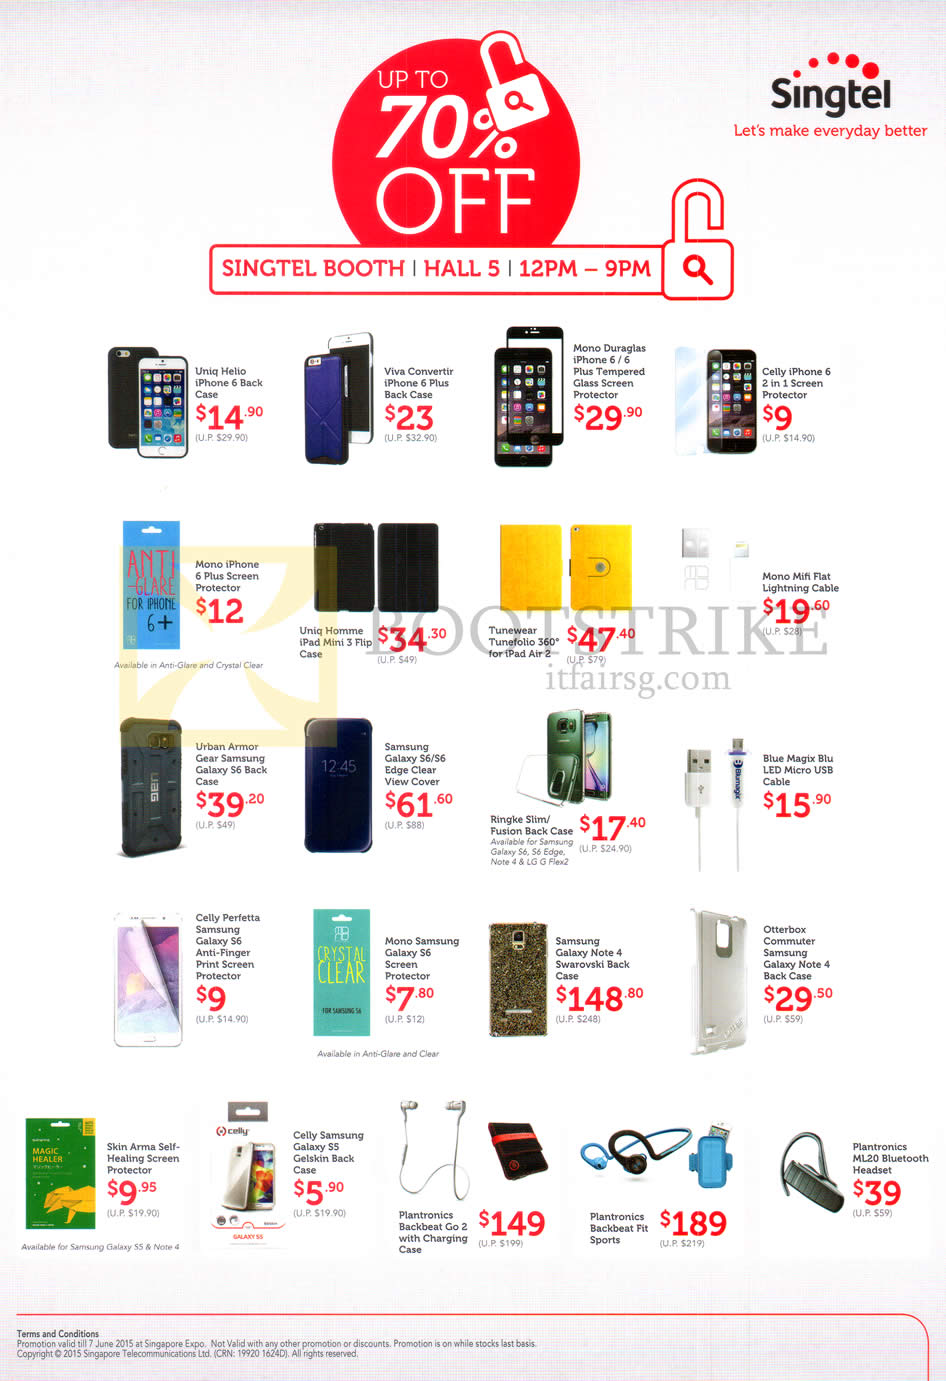 PC SHOW 2015 price list image brochure of Singtel Accessories Uniq Hello, Viva Converter, Mono Duraglas, Celly, Galaxy Note 4 Swarovski, Plantronics Backbeat Go2, Fit